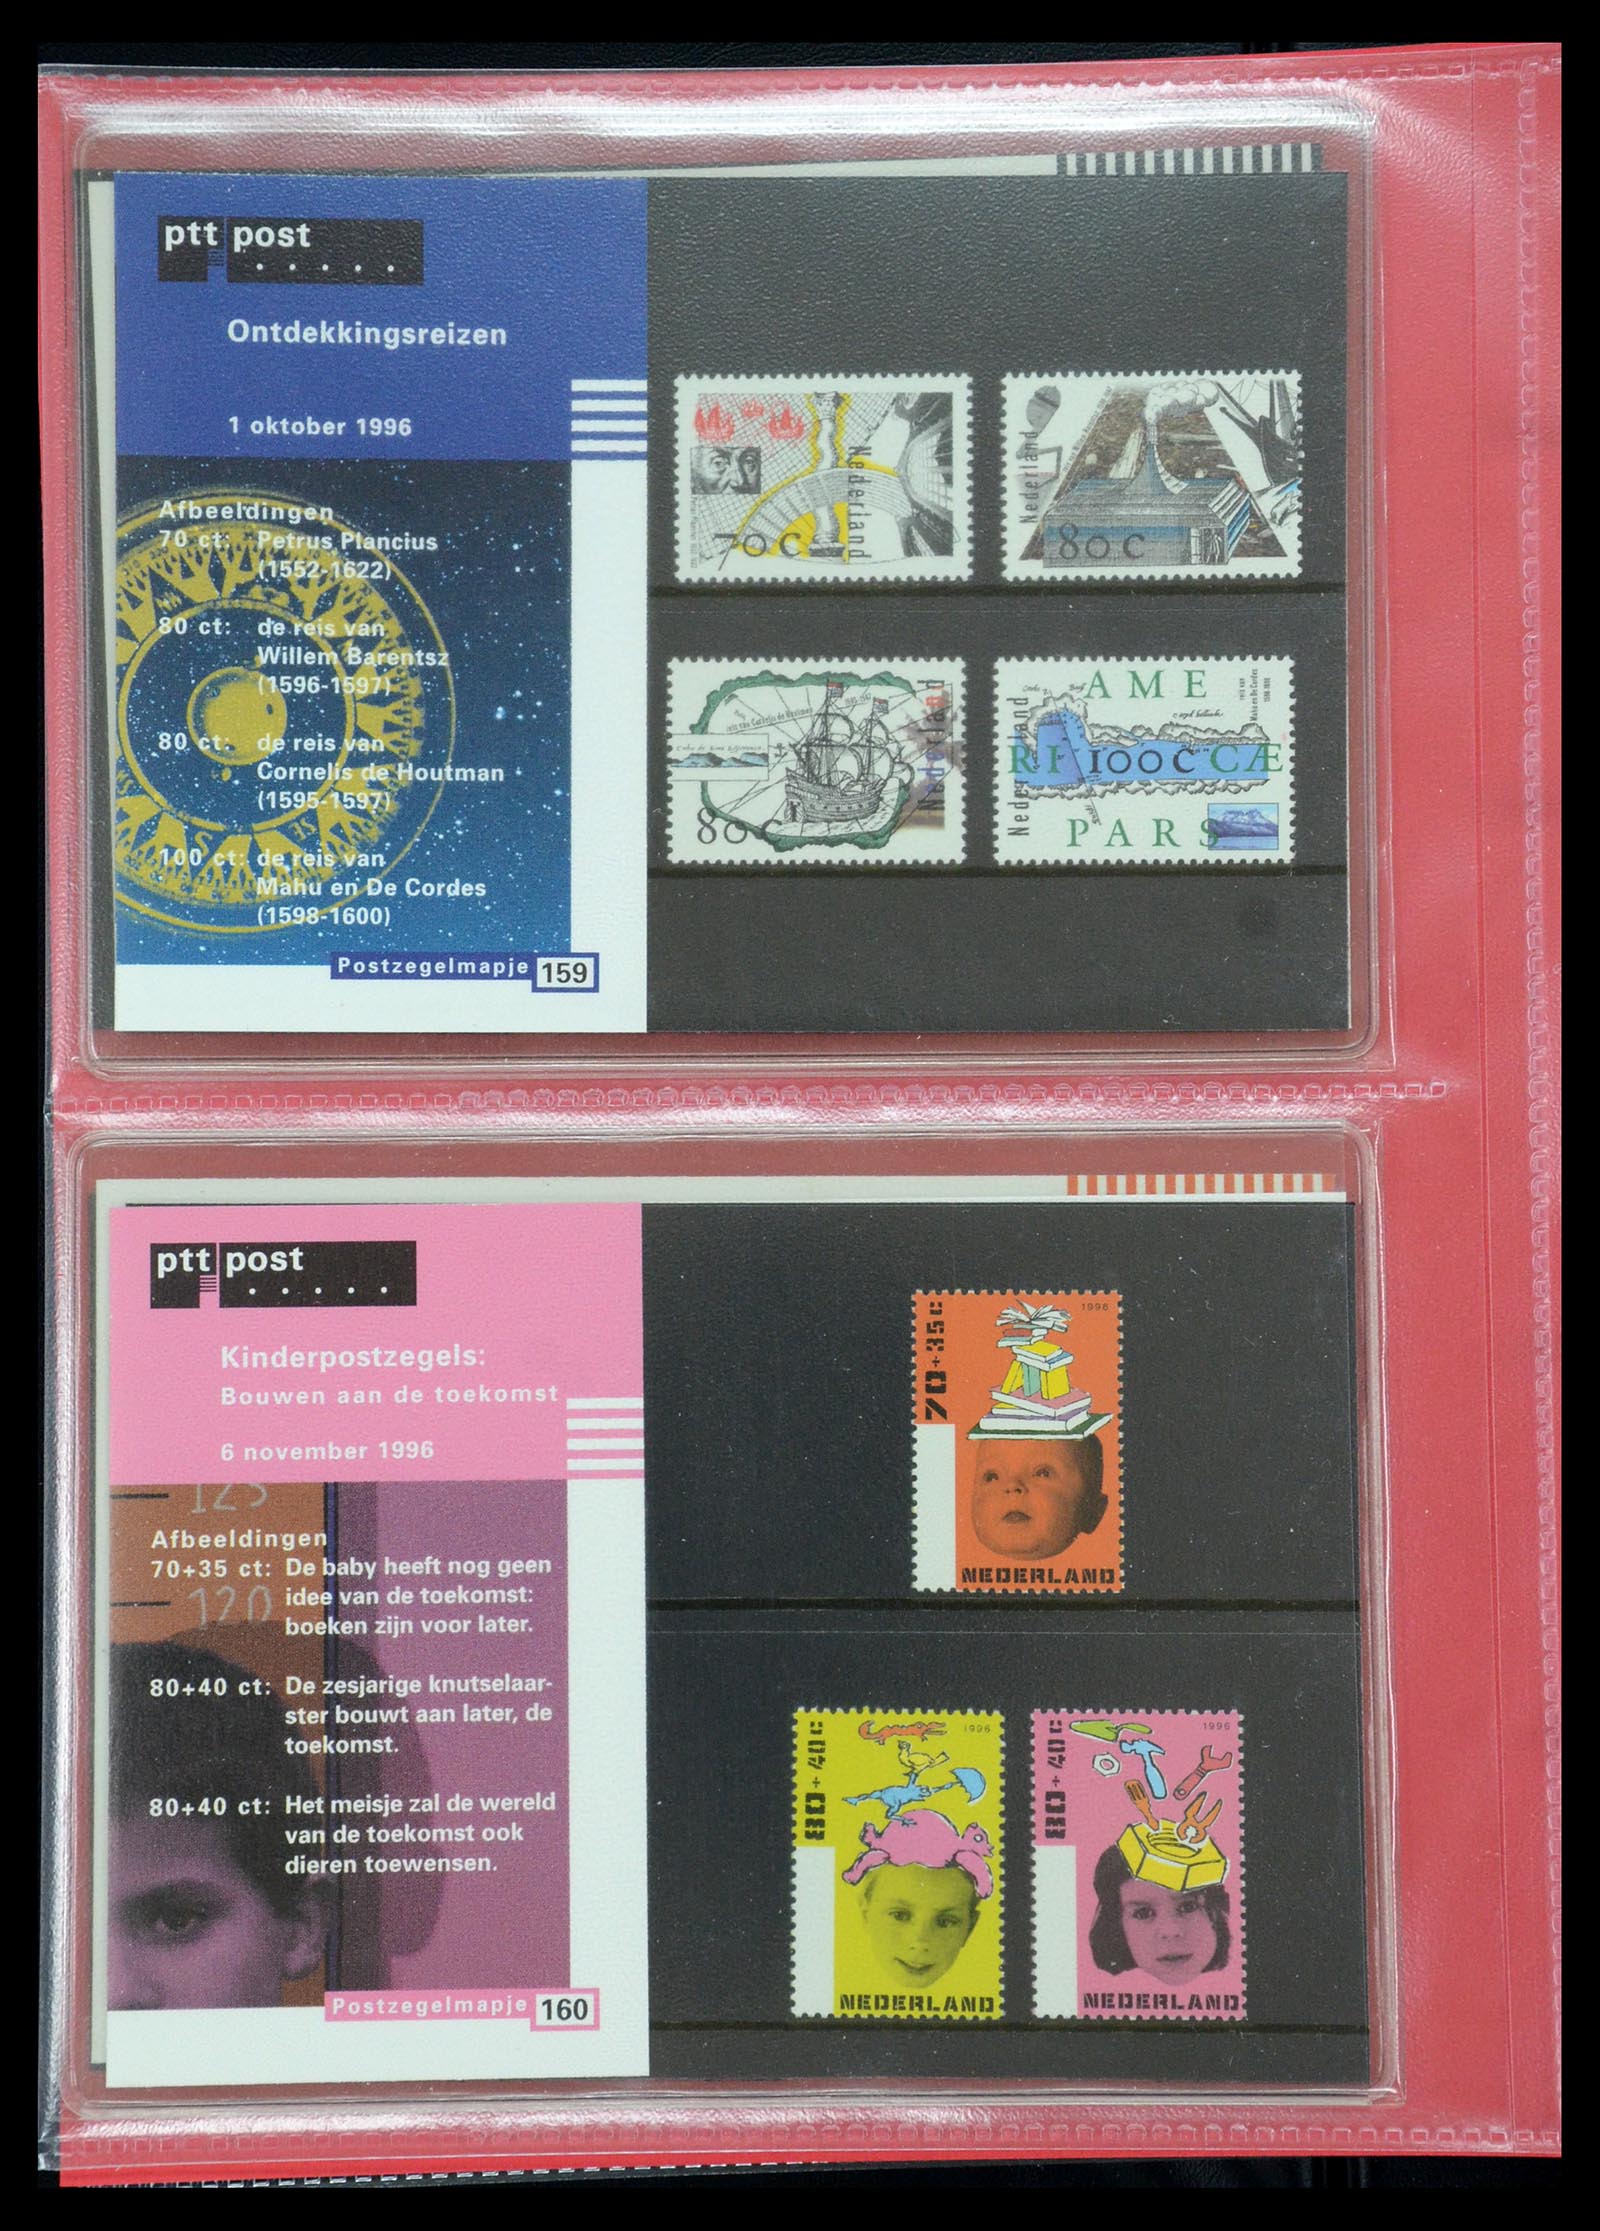 35692 082 - Stamp Collection 35692 Netherlands presentation packs 1982-2021!!